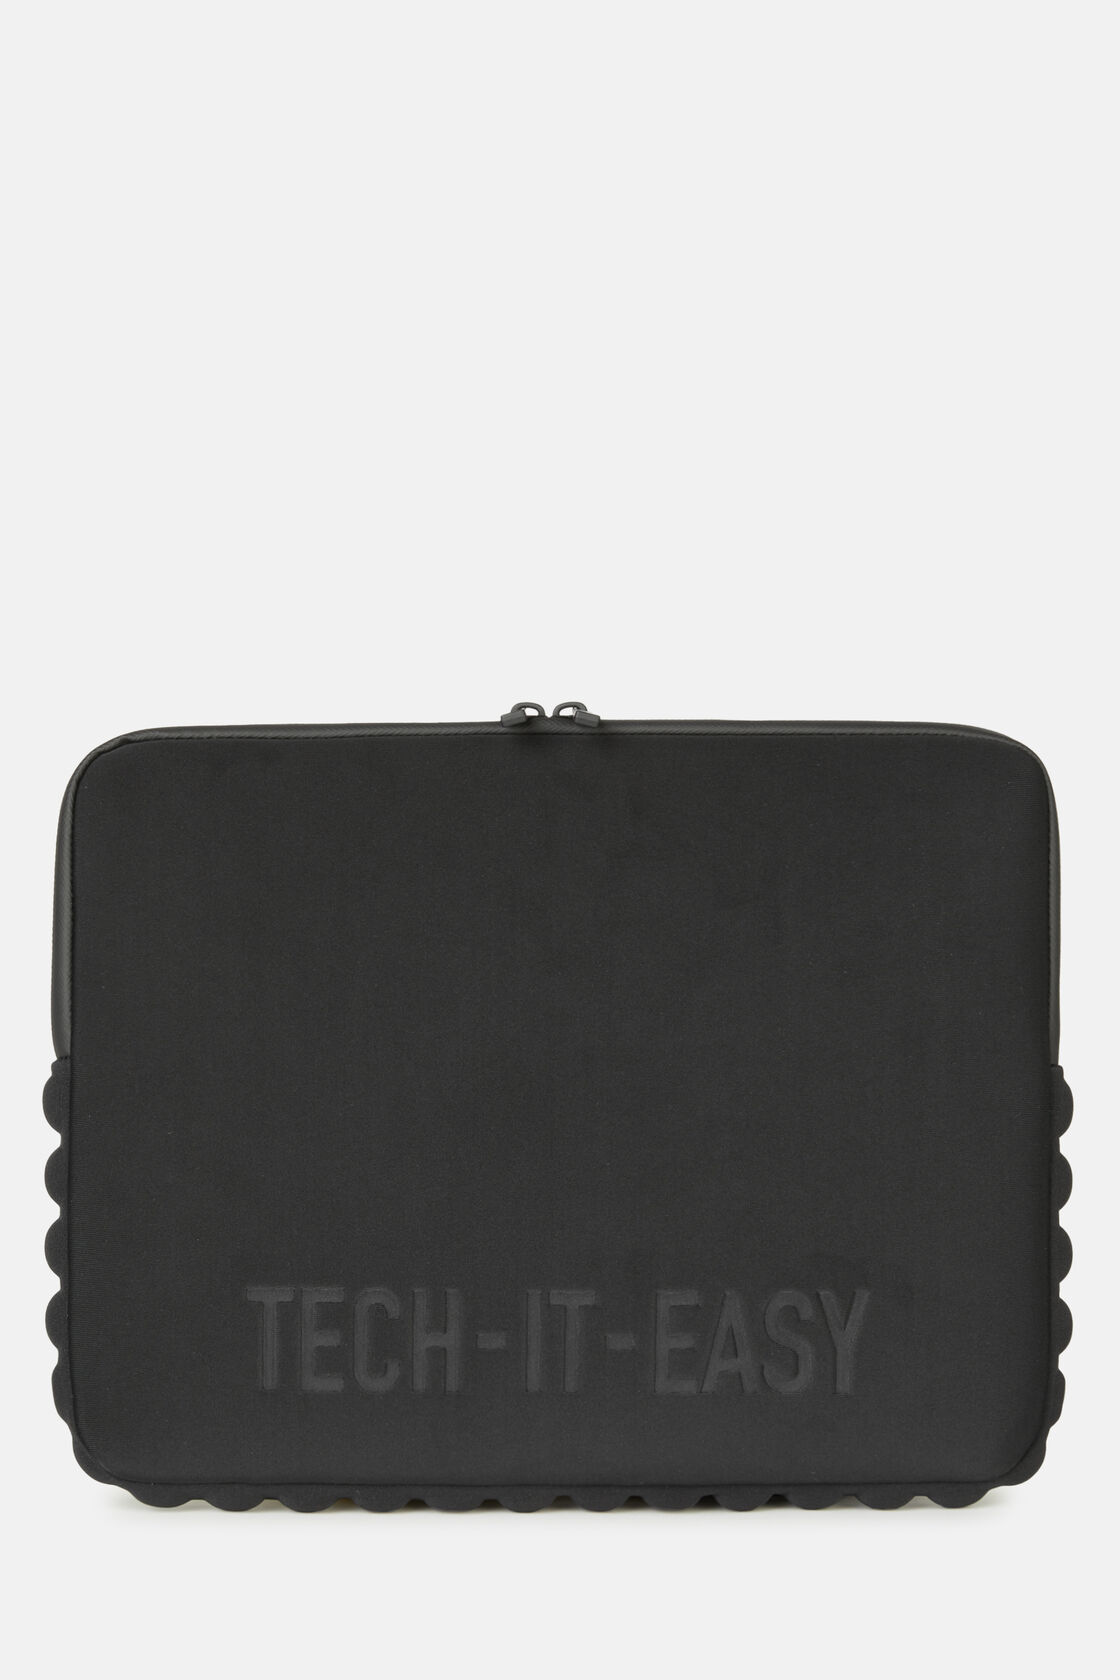 Capa para computador portátil em tecido técnico, Black, hi-res